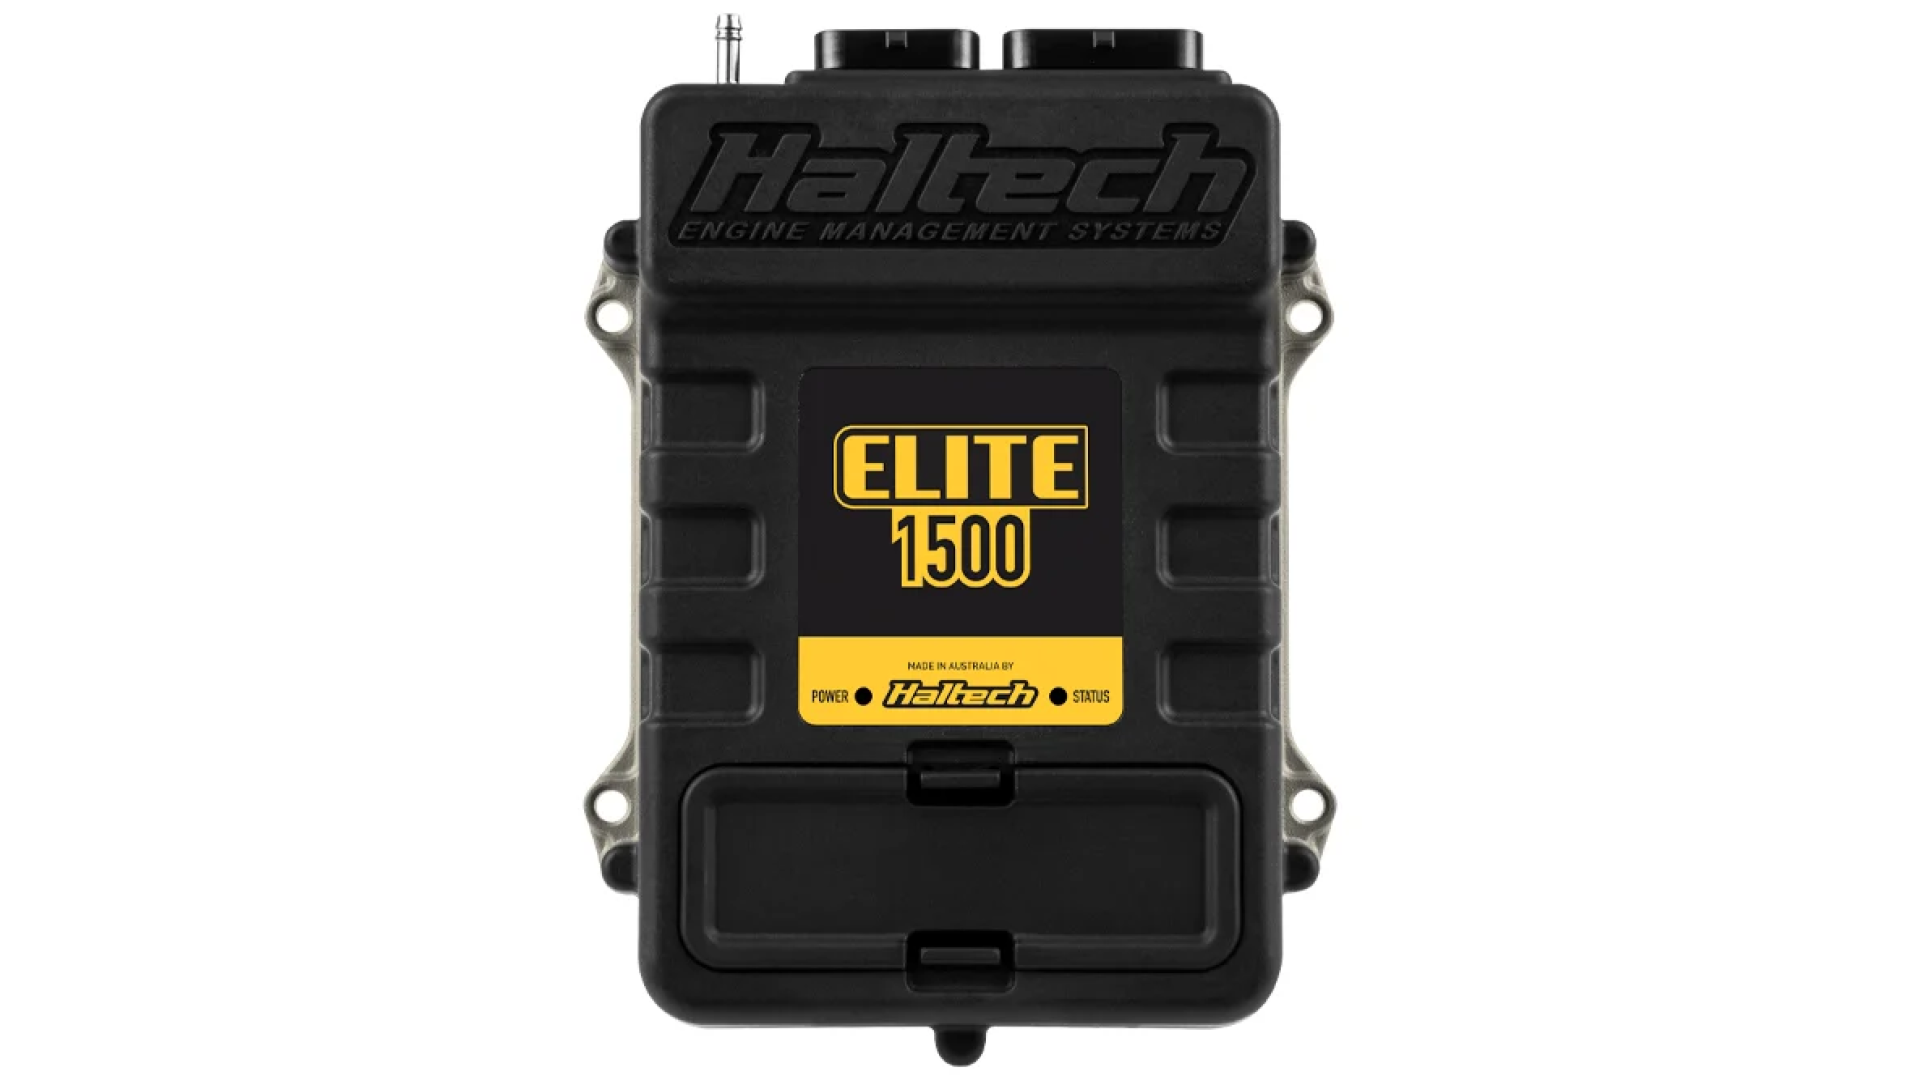 Haltech Elite 1500 ECU Controller